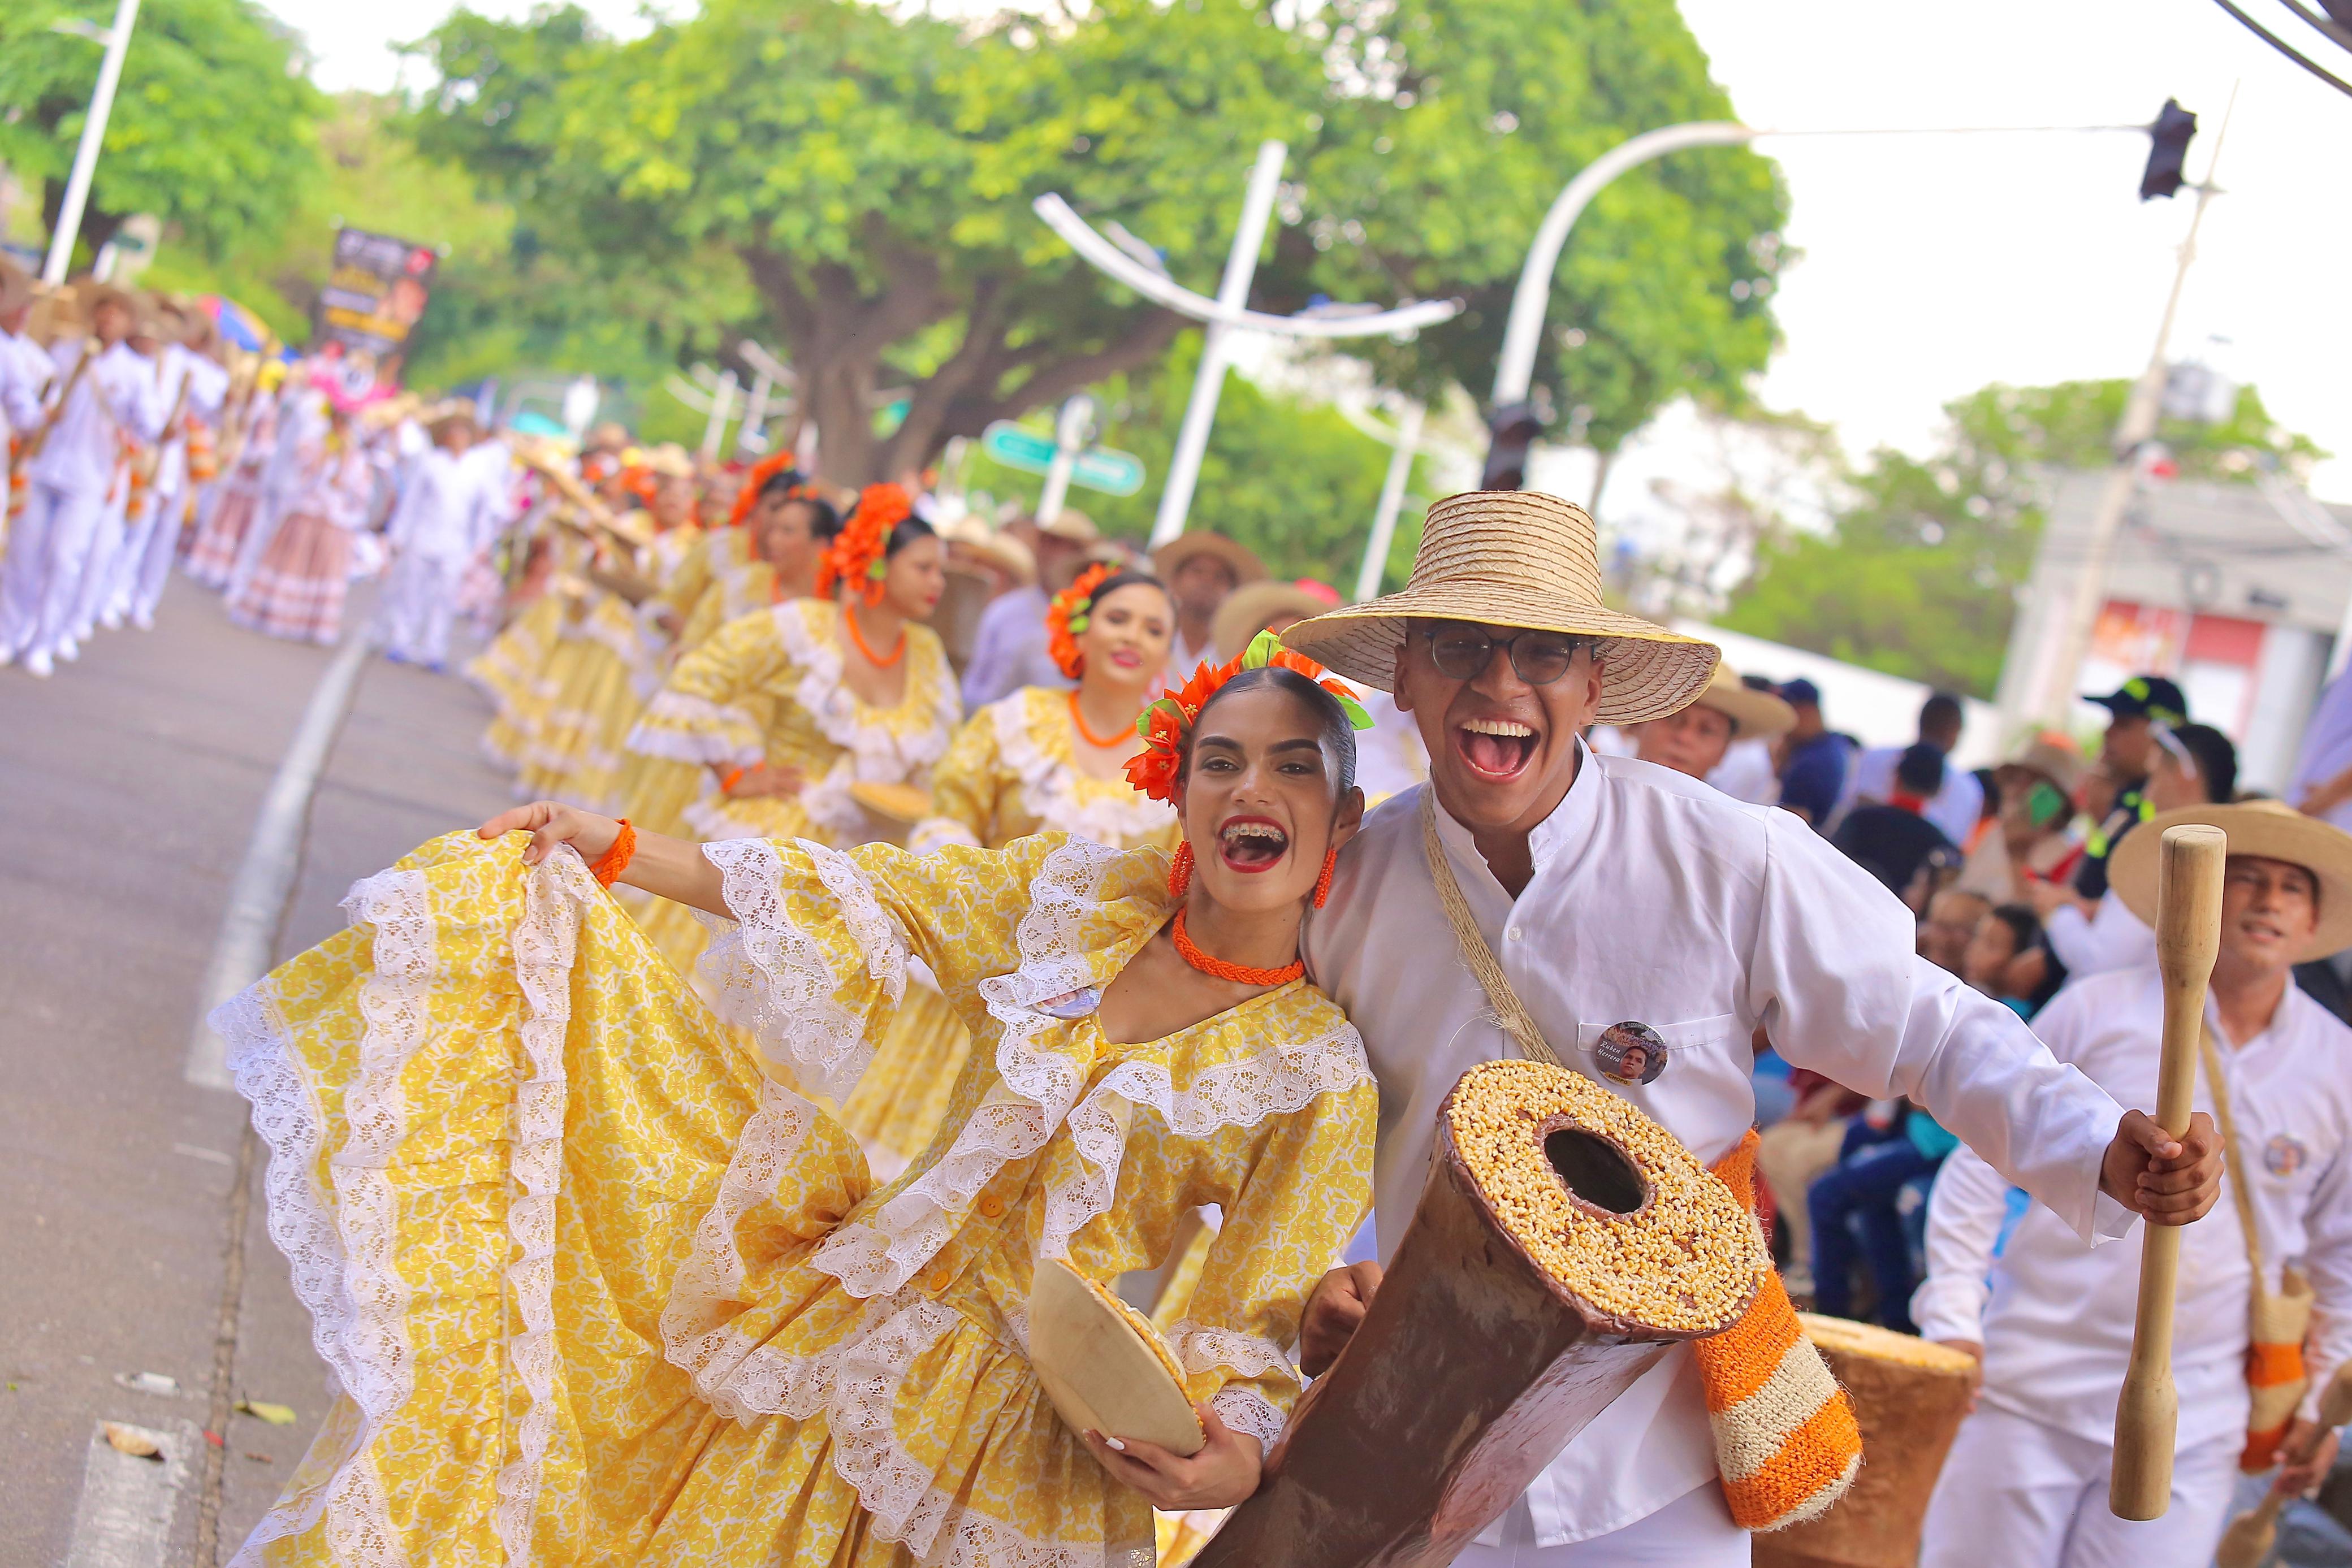 El Desfile de Piloneras le regaló una jornada de alegría y color al Festival Vallenato